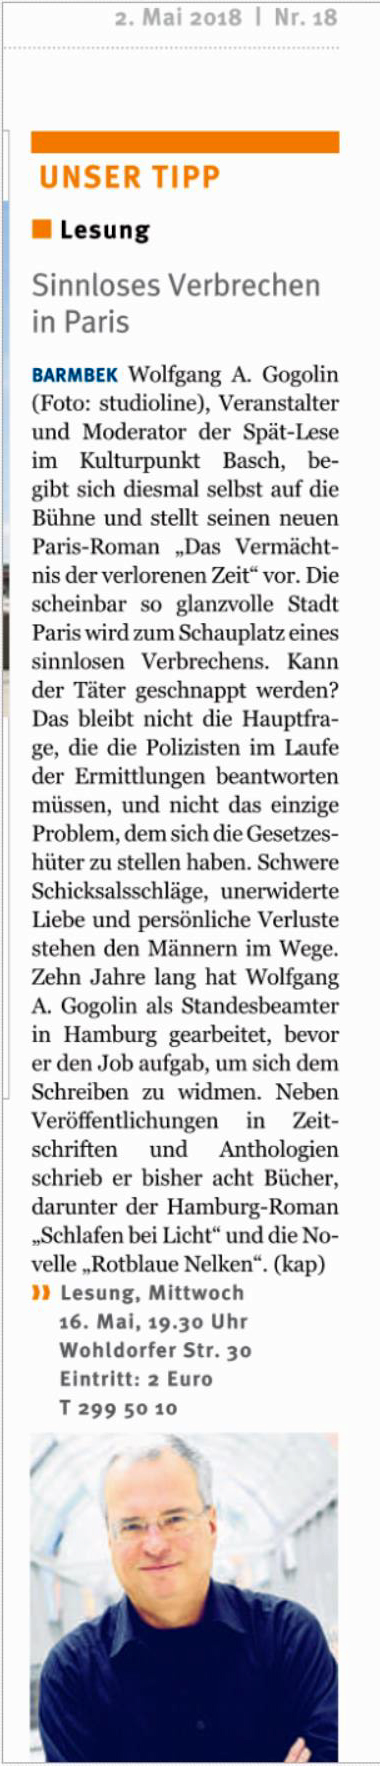 Lesungsankndigung Vermchtnis der verlorenen Zeit fr den 16. Mai 2018 im Hamburger Wochenblatt